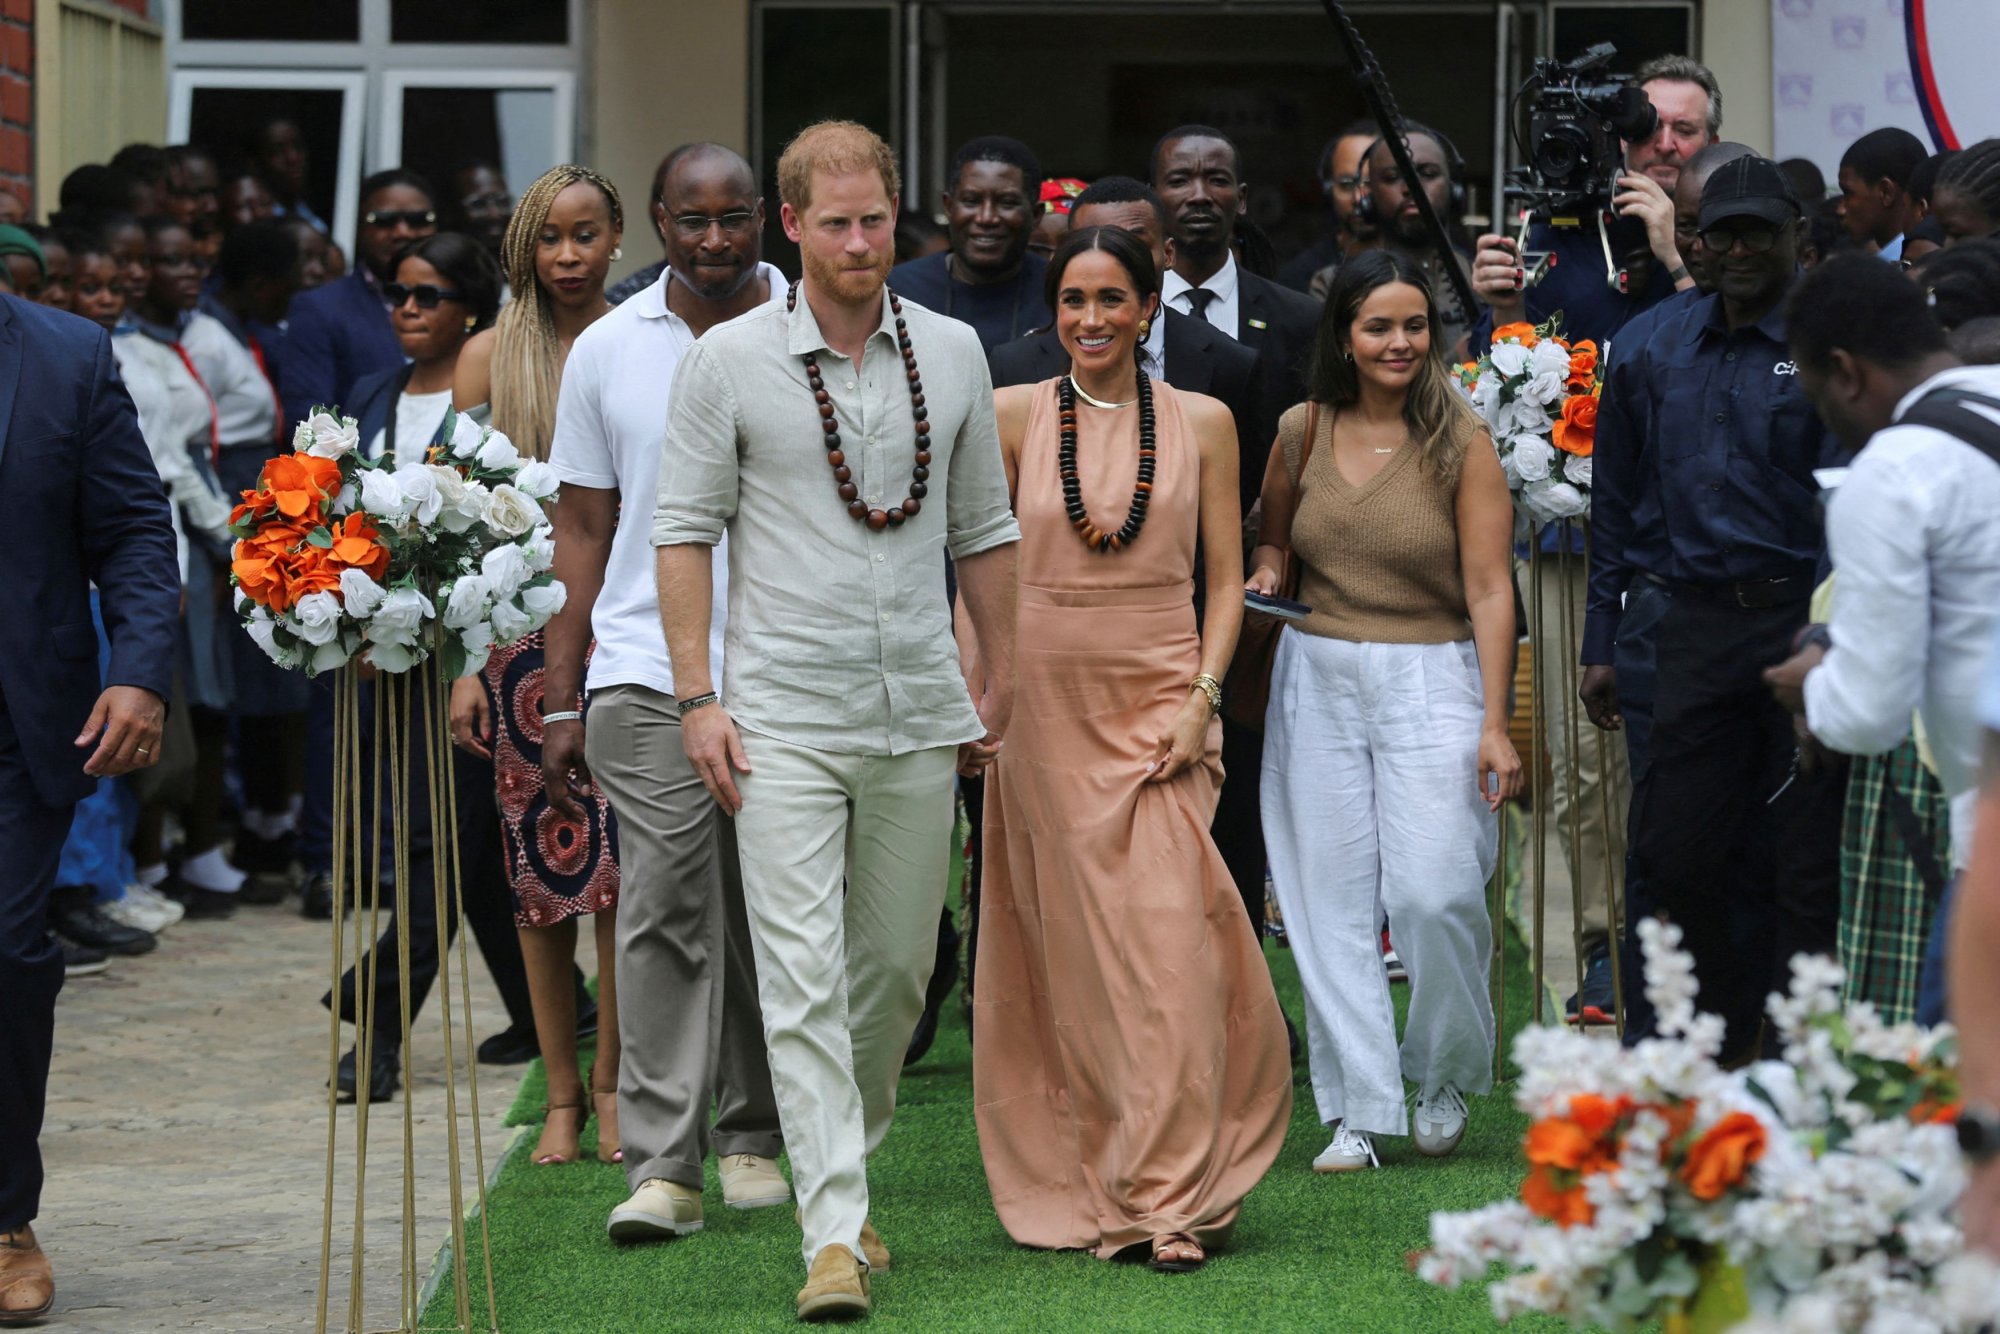 Θερμή υποδοχή για πρίγκιπα Χάρι και Μέγκαν Μαρκλ στη Νιγηρία - «Βλέπετε γιατί τον παντρεύτηκα;»